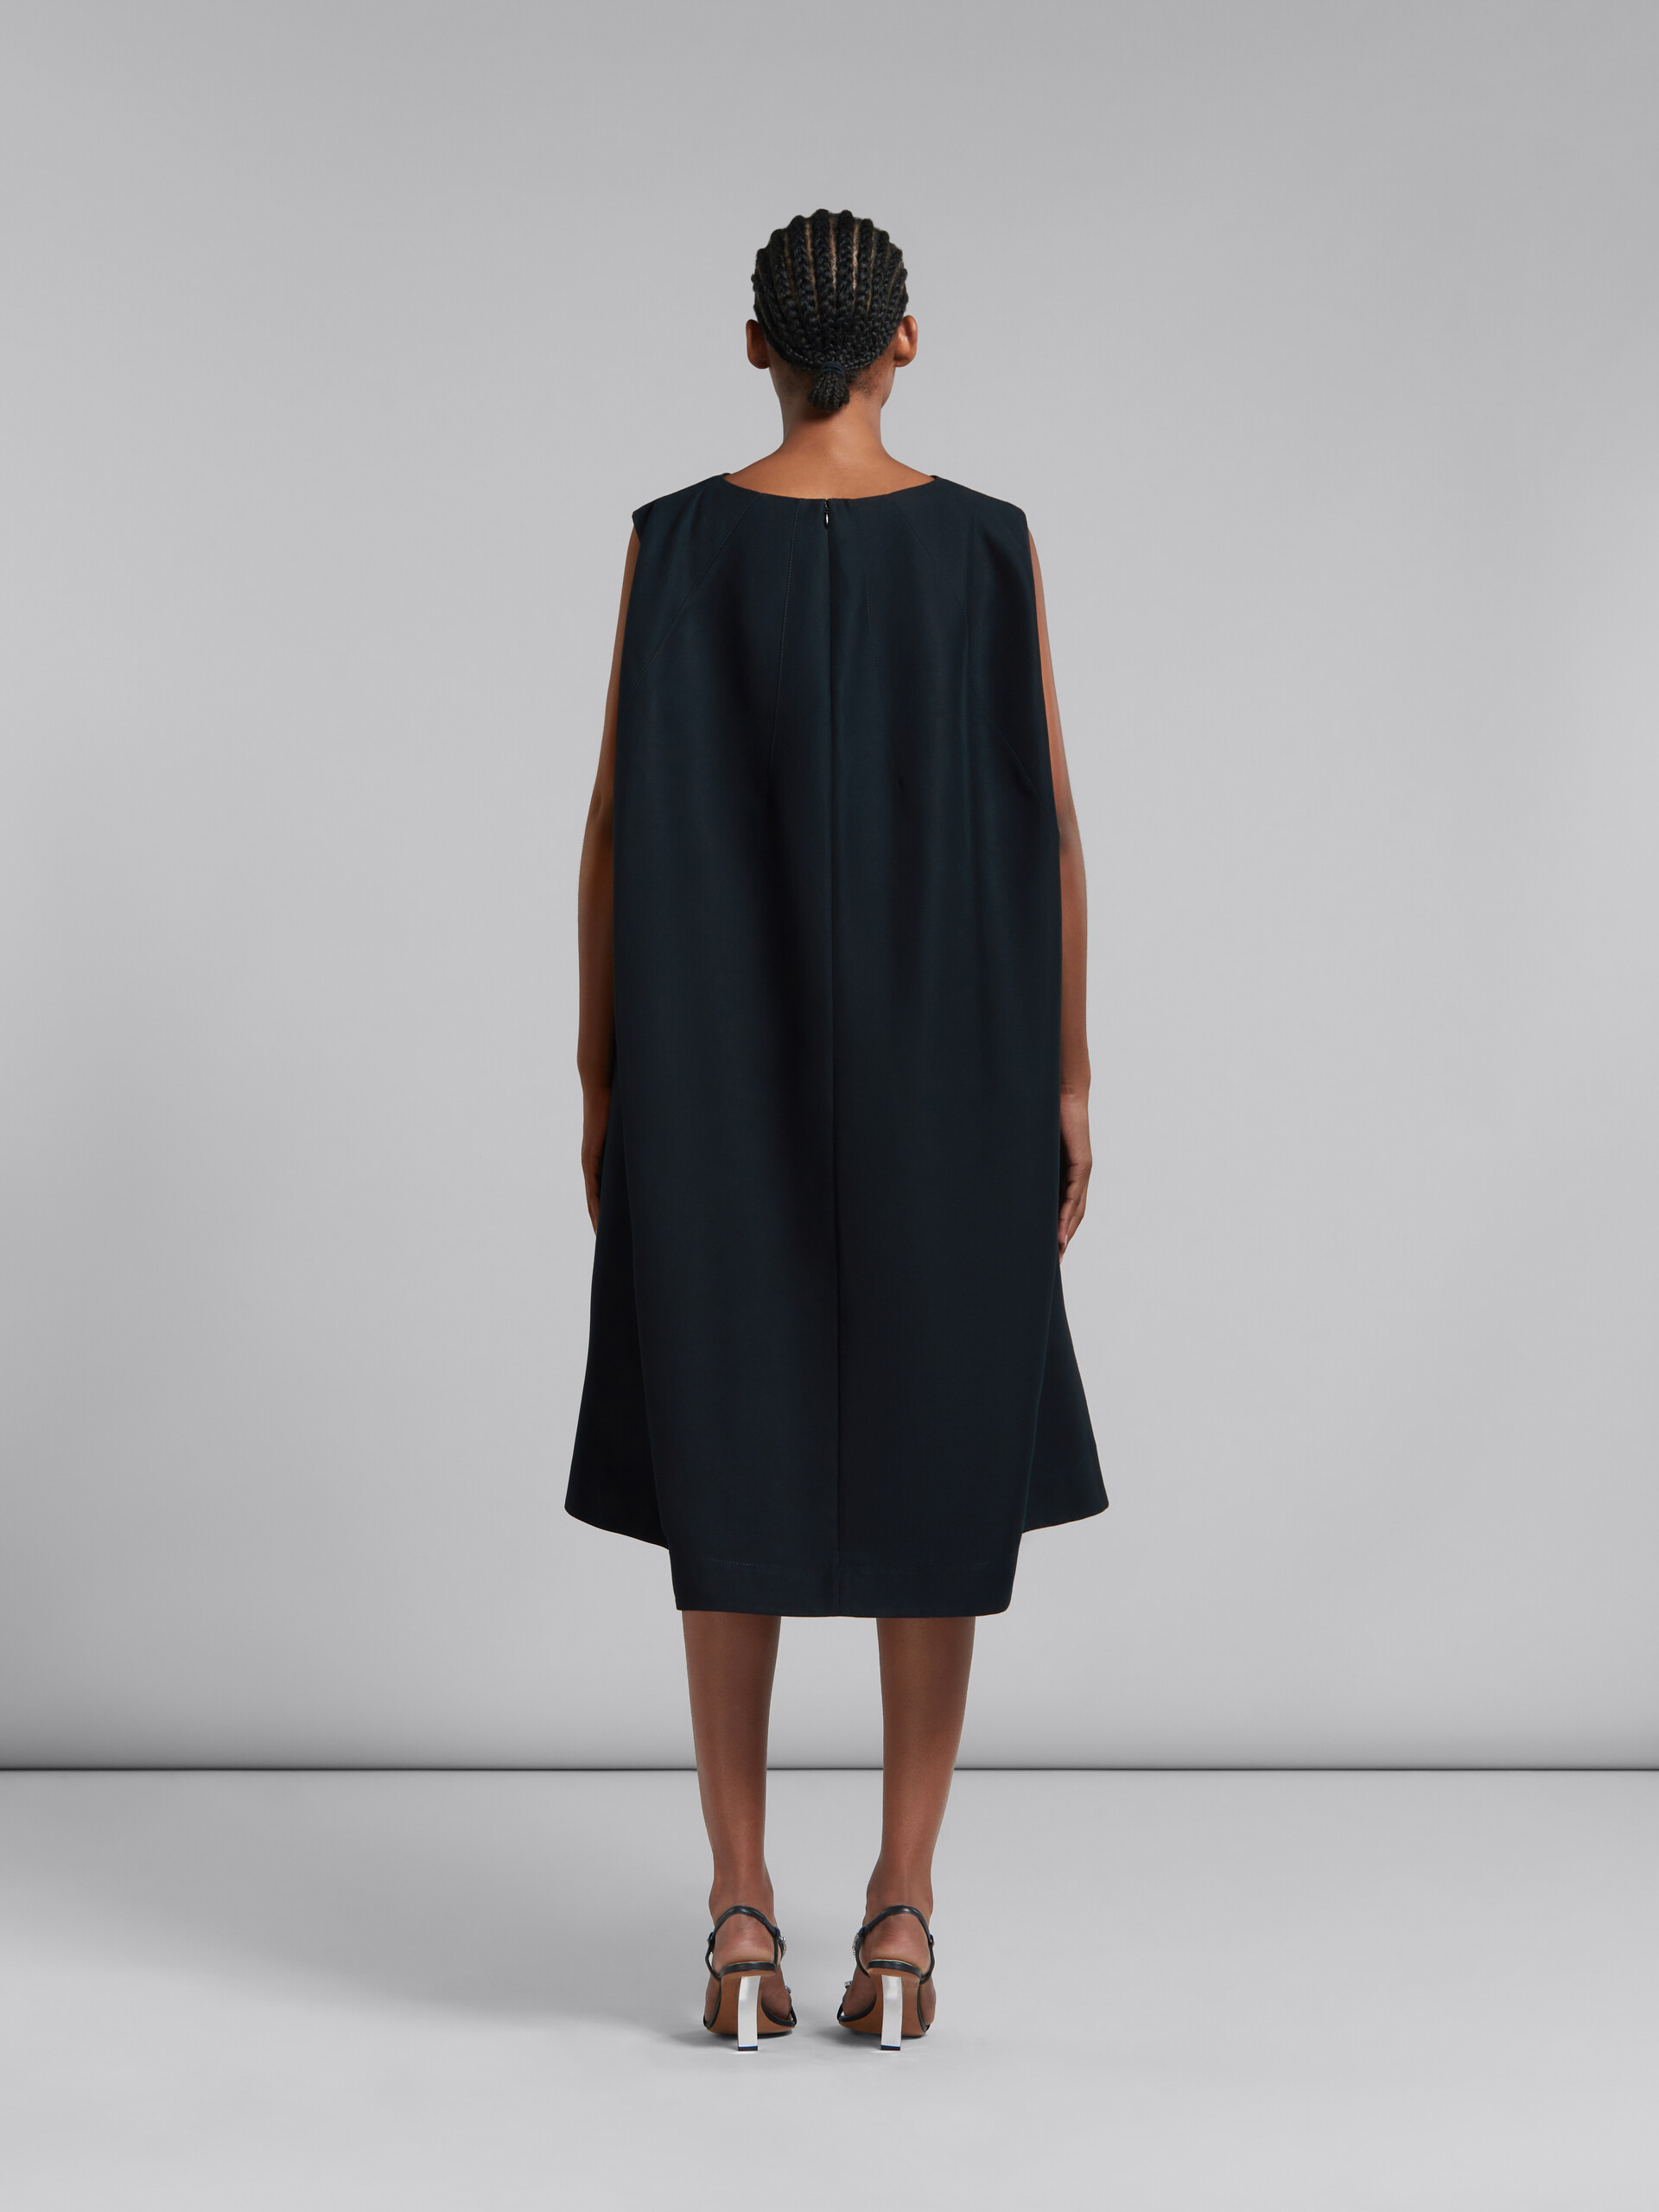 Schwarzes Kokonkleid aus Baumwoll-Cady - Kleider - Image 3